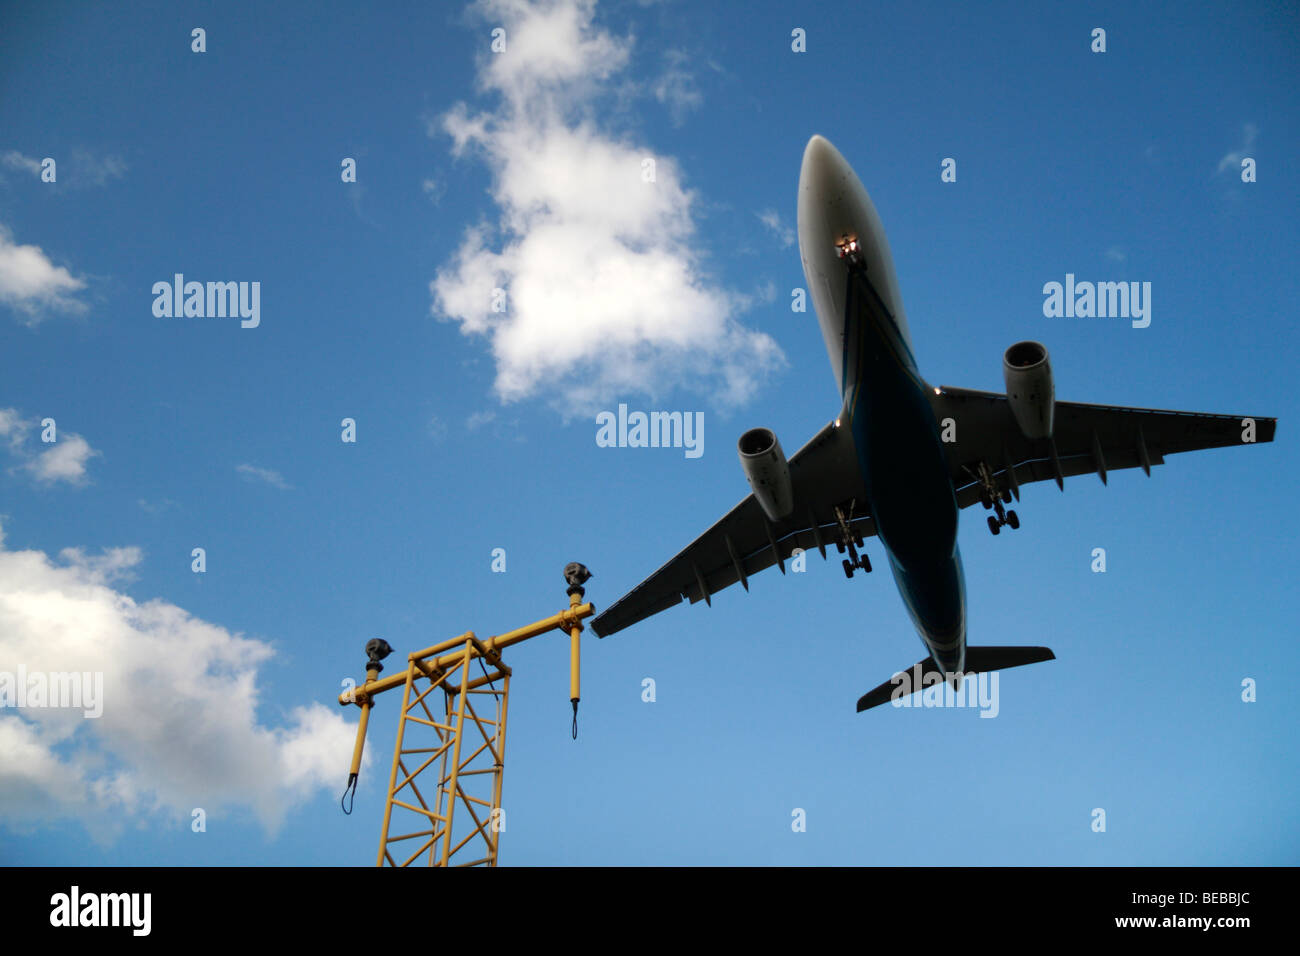 Ein niedrig fliegenden Flugzeug kommt in auf der Süd-Landebahn am Londoner Flughafen Heathrow, Vereinigtes Königreich zu landen. Stockfoto